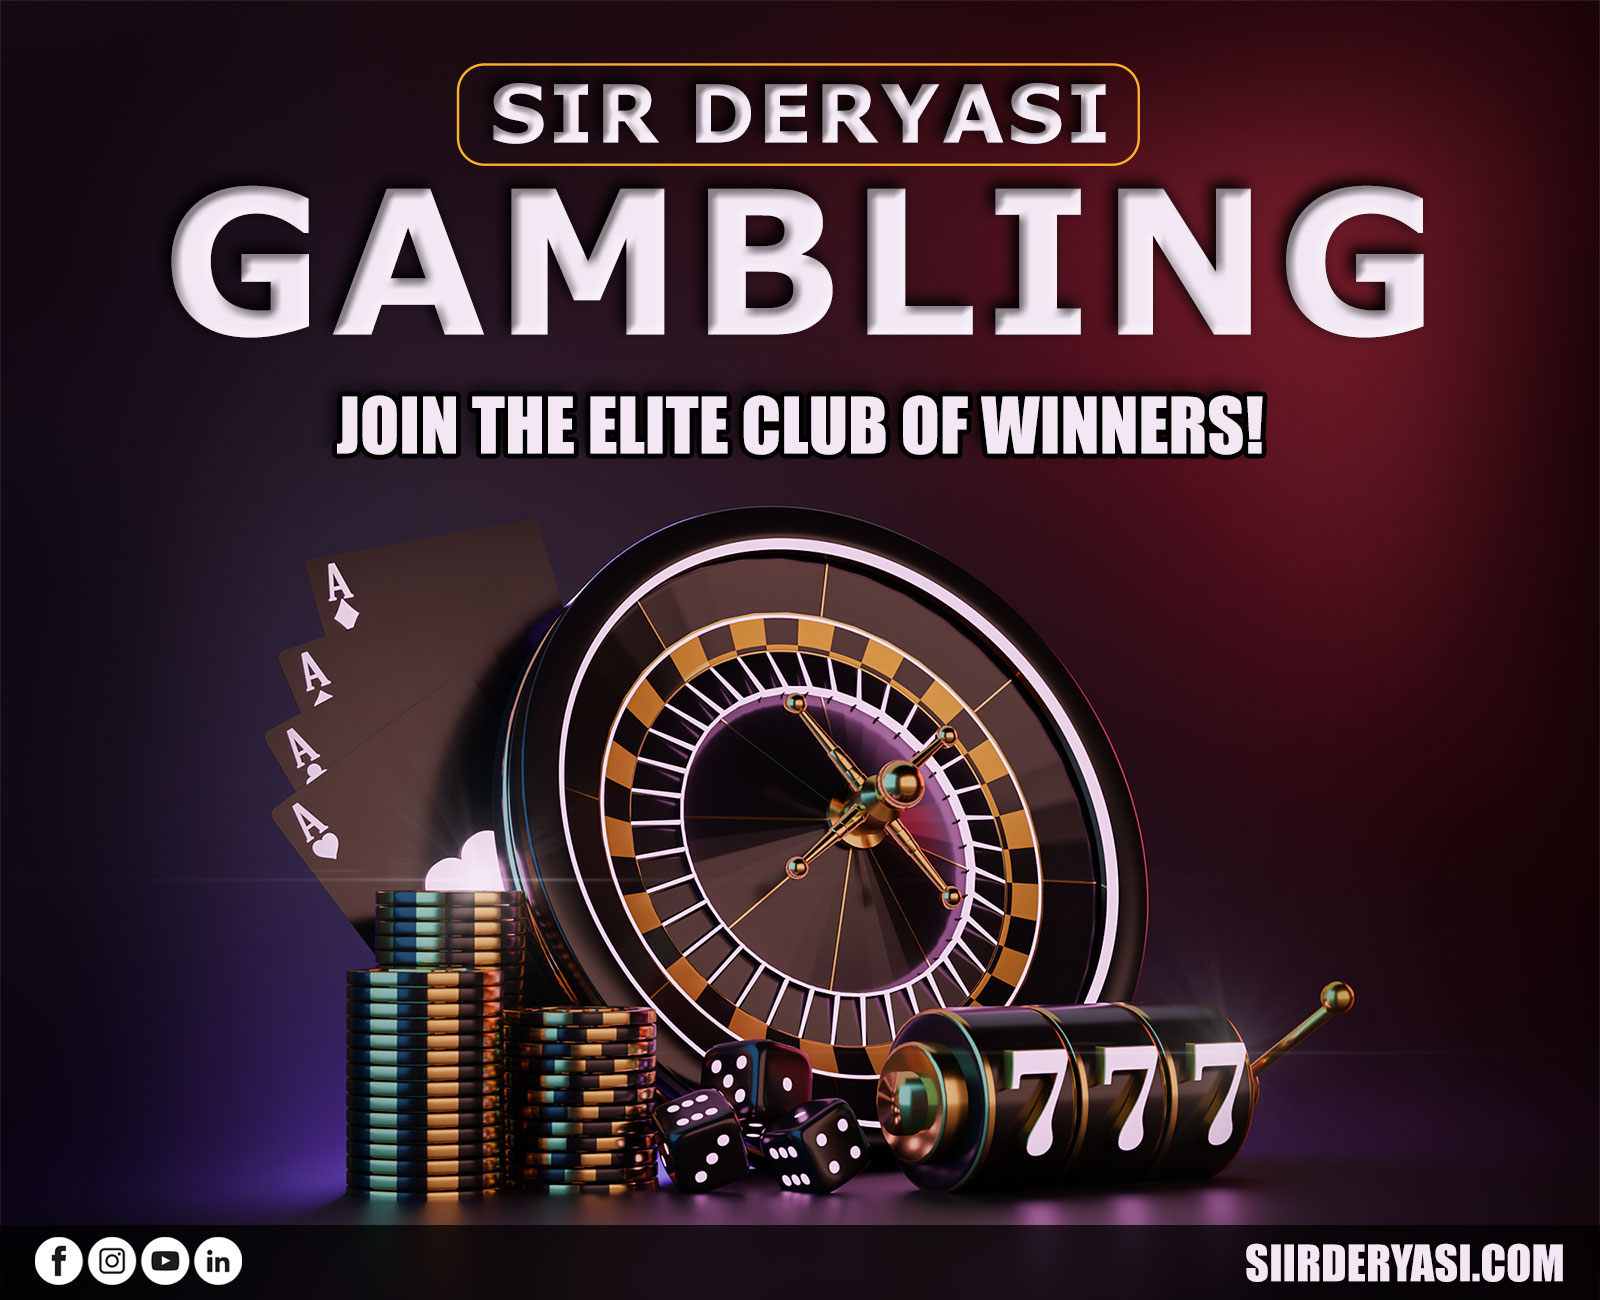 Sir Deryasi Gambling